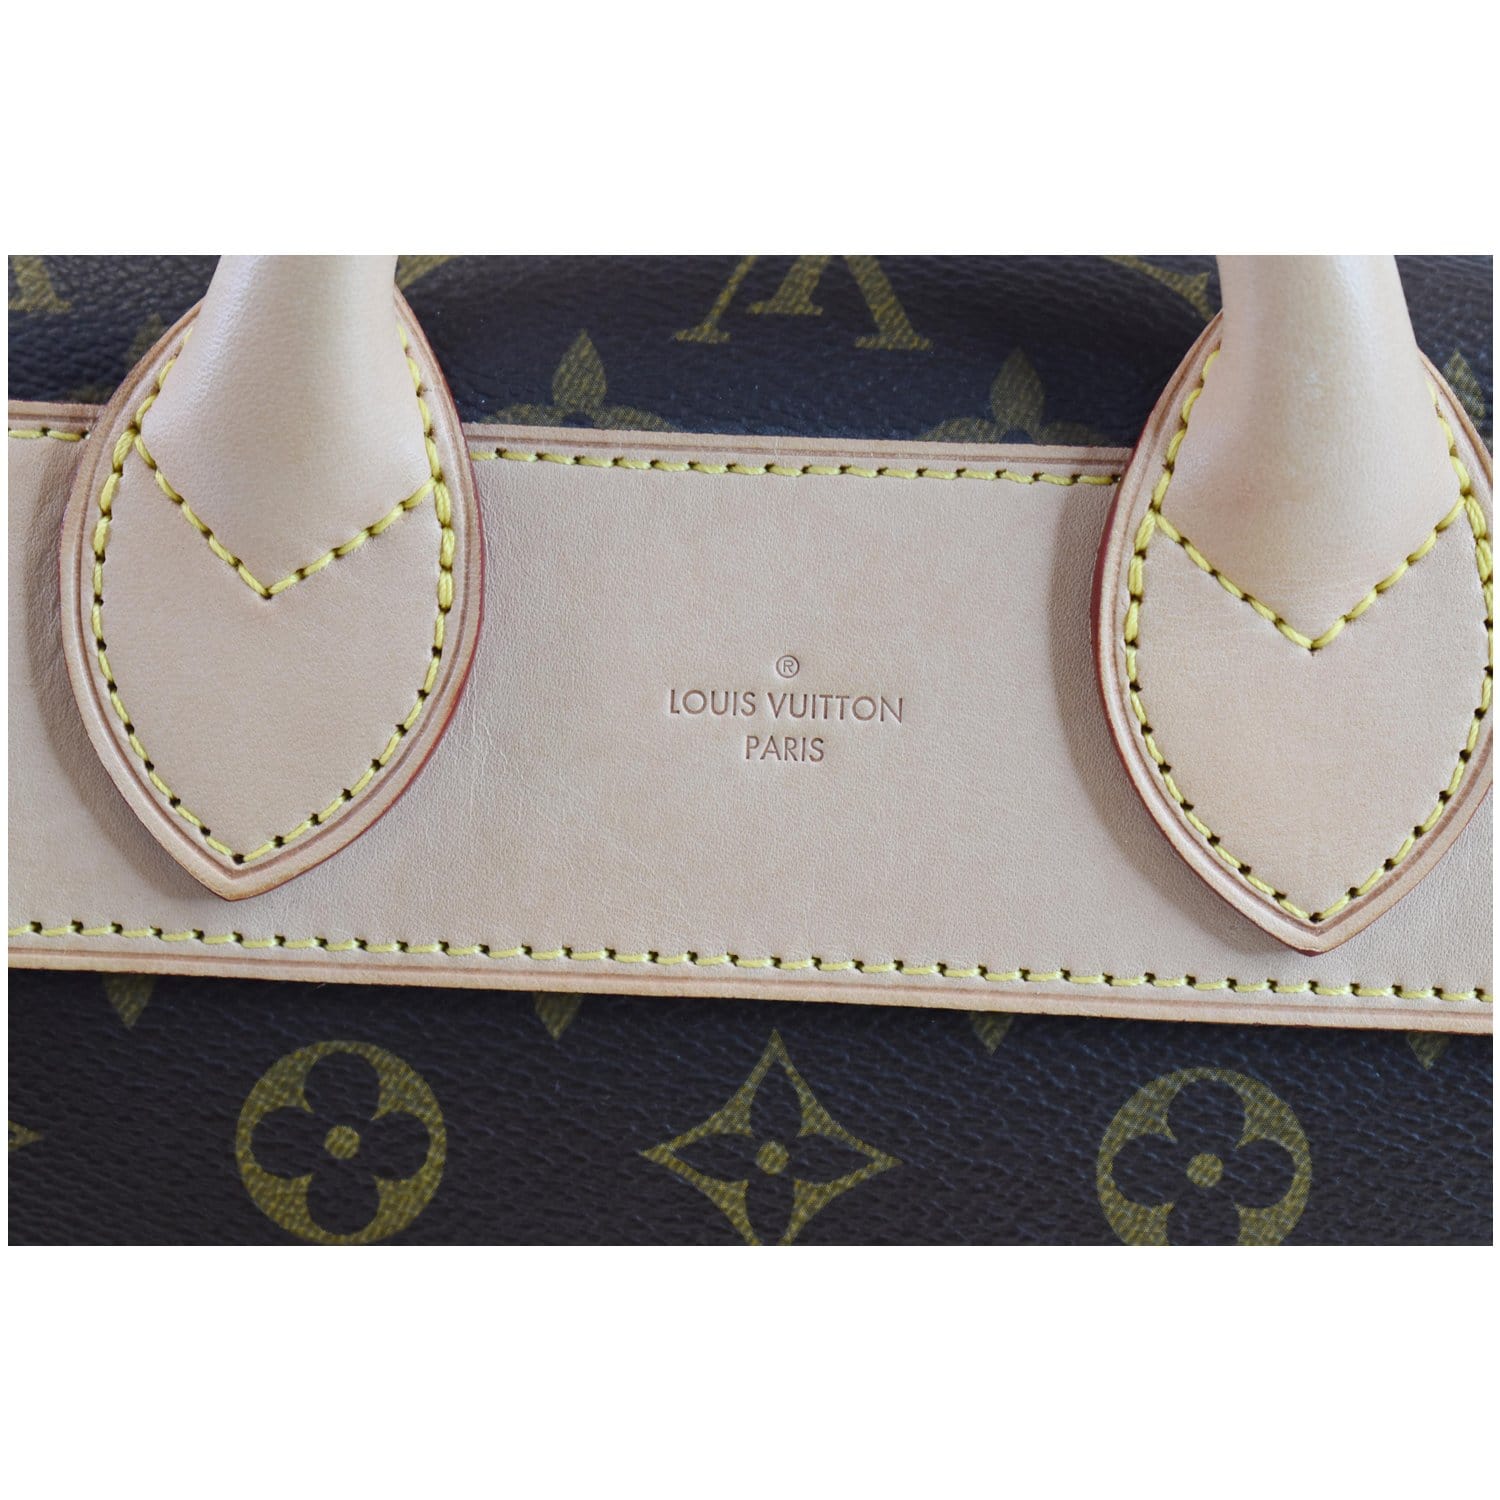 Louis Vuitton, Bags, Authentic Louis Vuitton Monogram Wallet 992